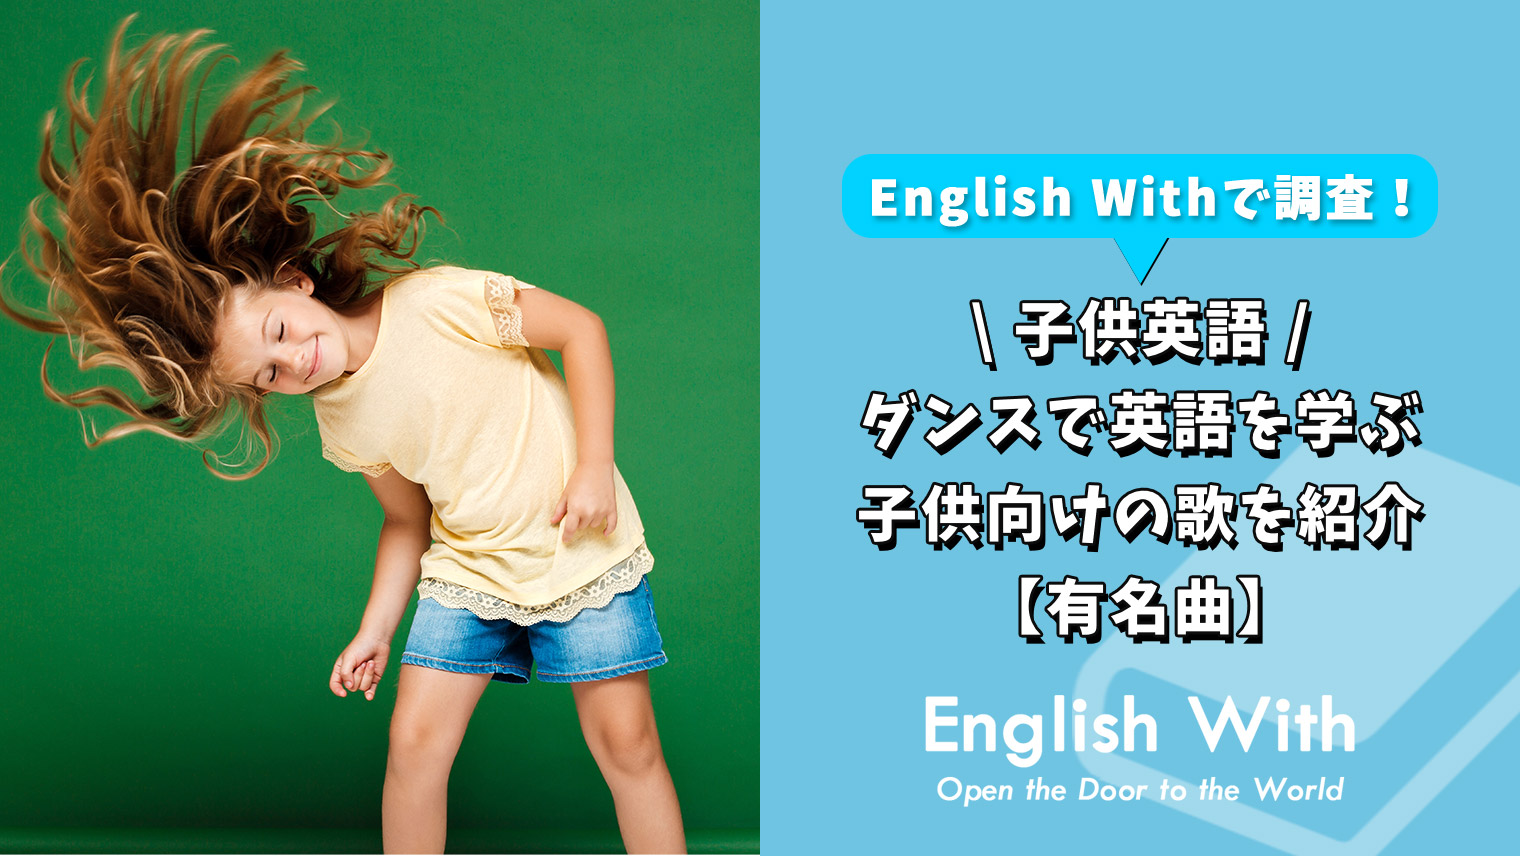 ダンスをしながら英語を覚える 子供向けの歌を紹介 有名曲 おすすめ英会話 英語学習の比較 ランキング English With